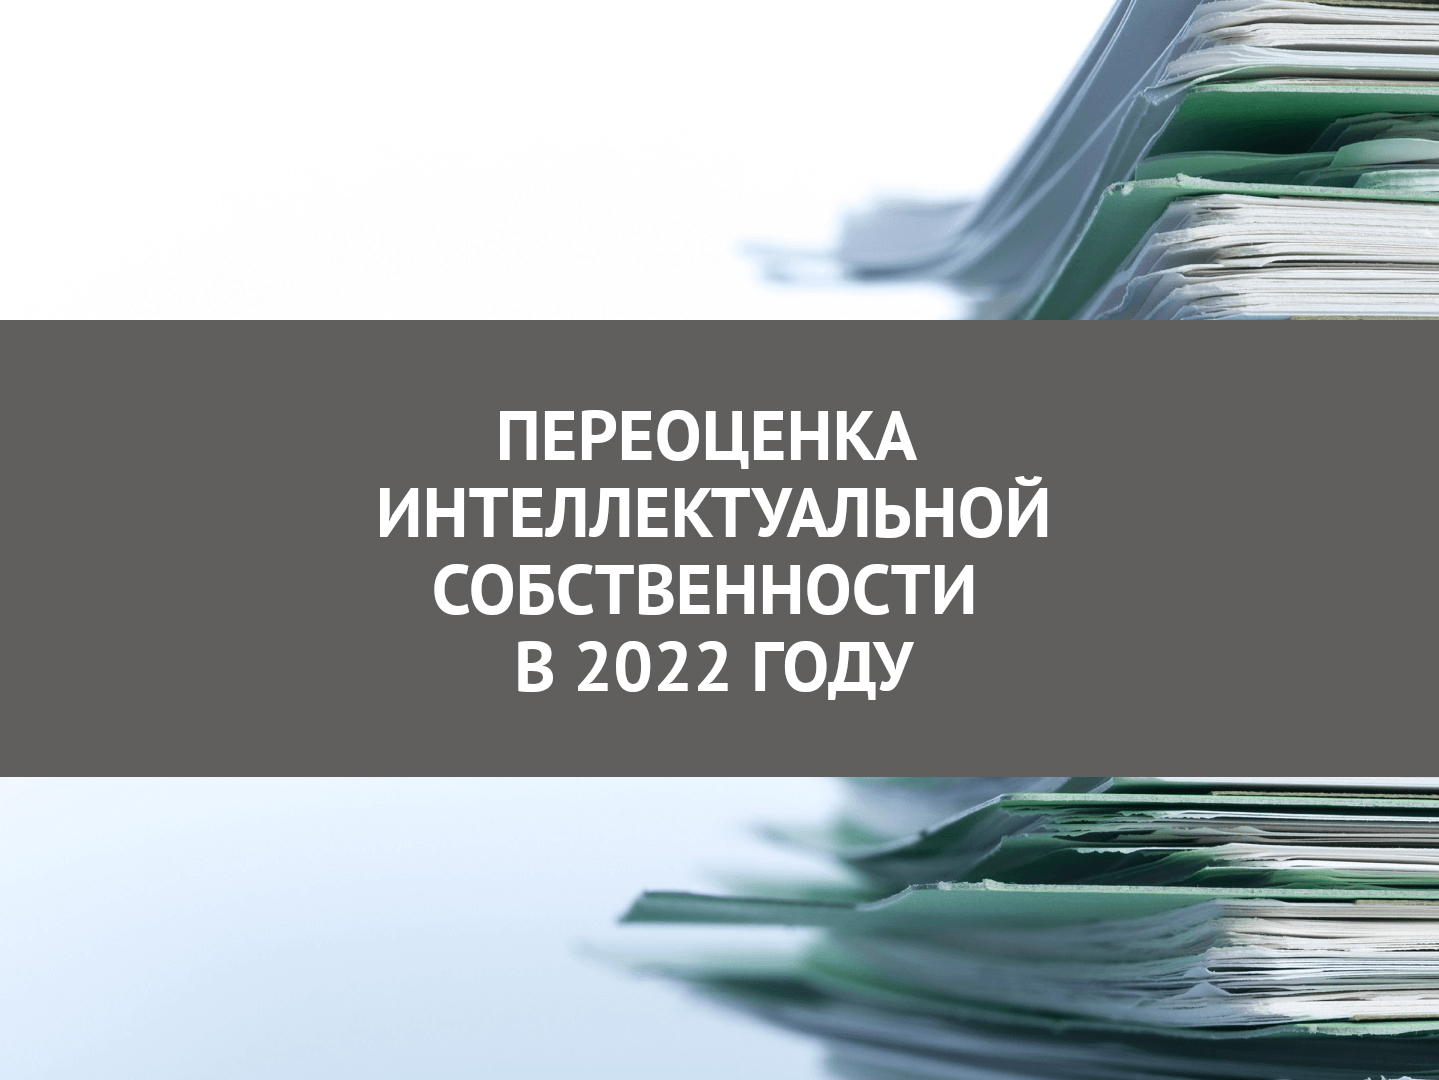 Переоценка интеллектуальной госсобственности в 2022 году